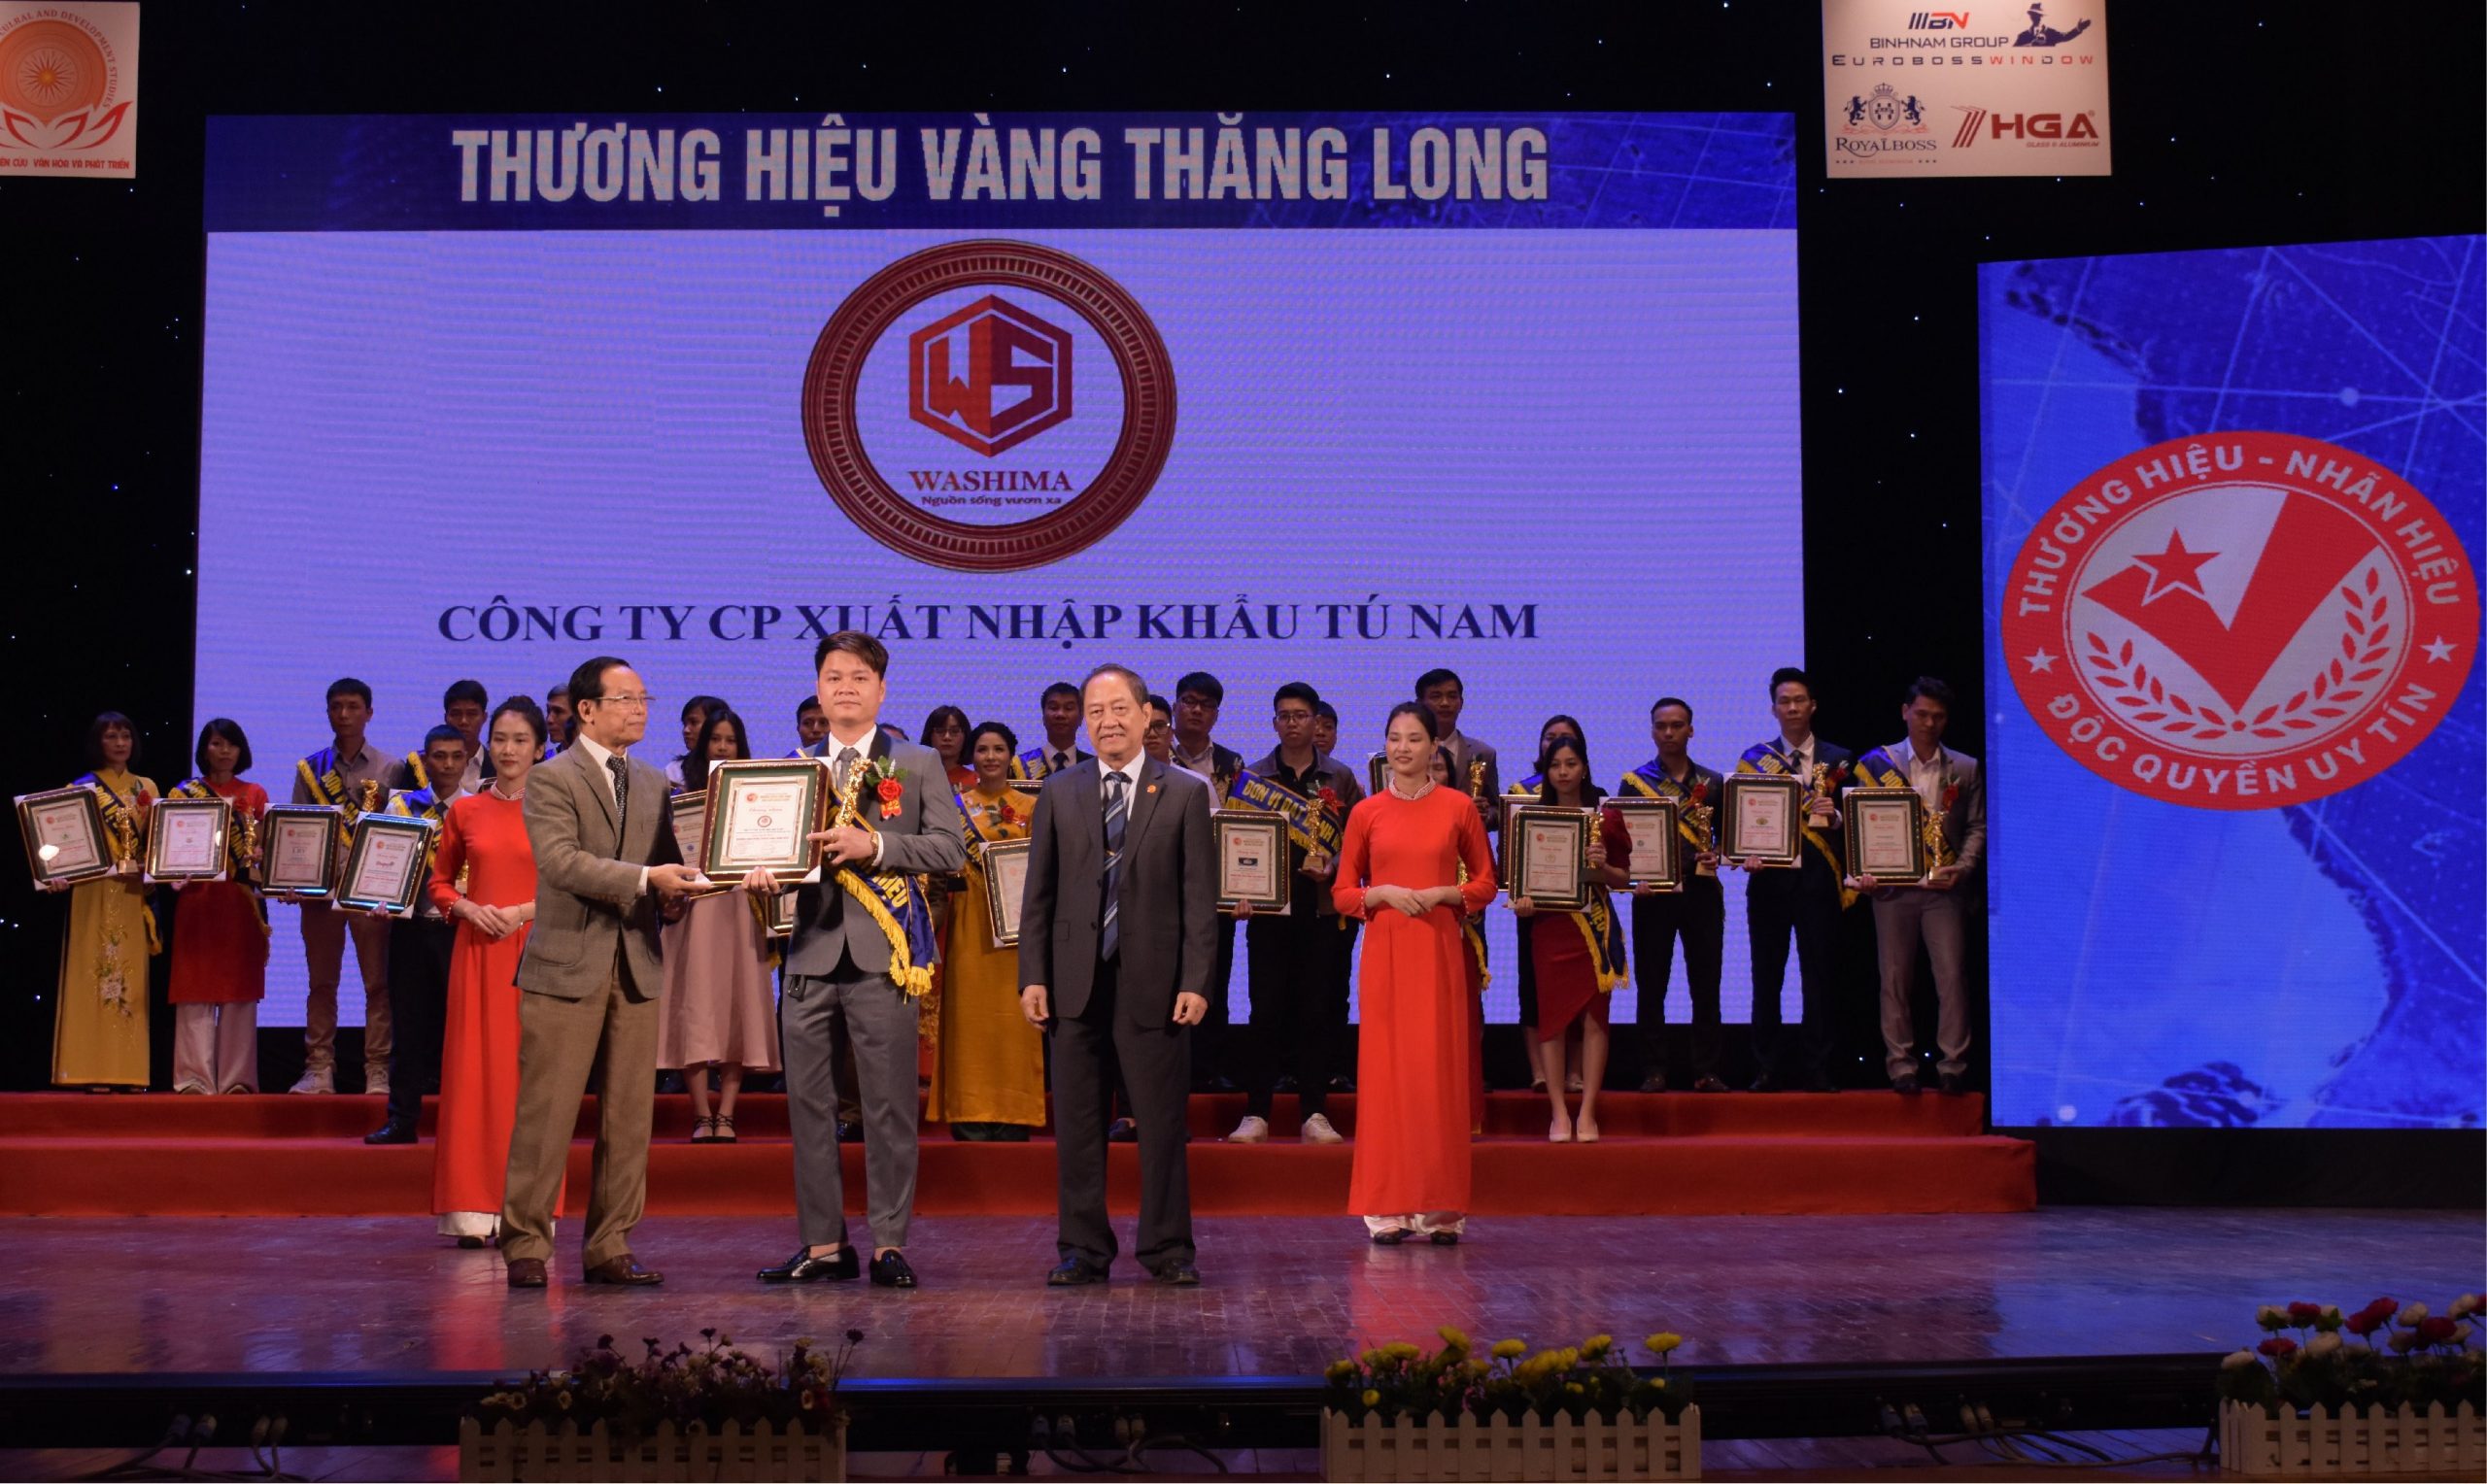 Ghế massage Washima nhận giải thưởng thương hiệu vàng Thăng Long 2020